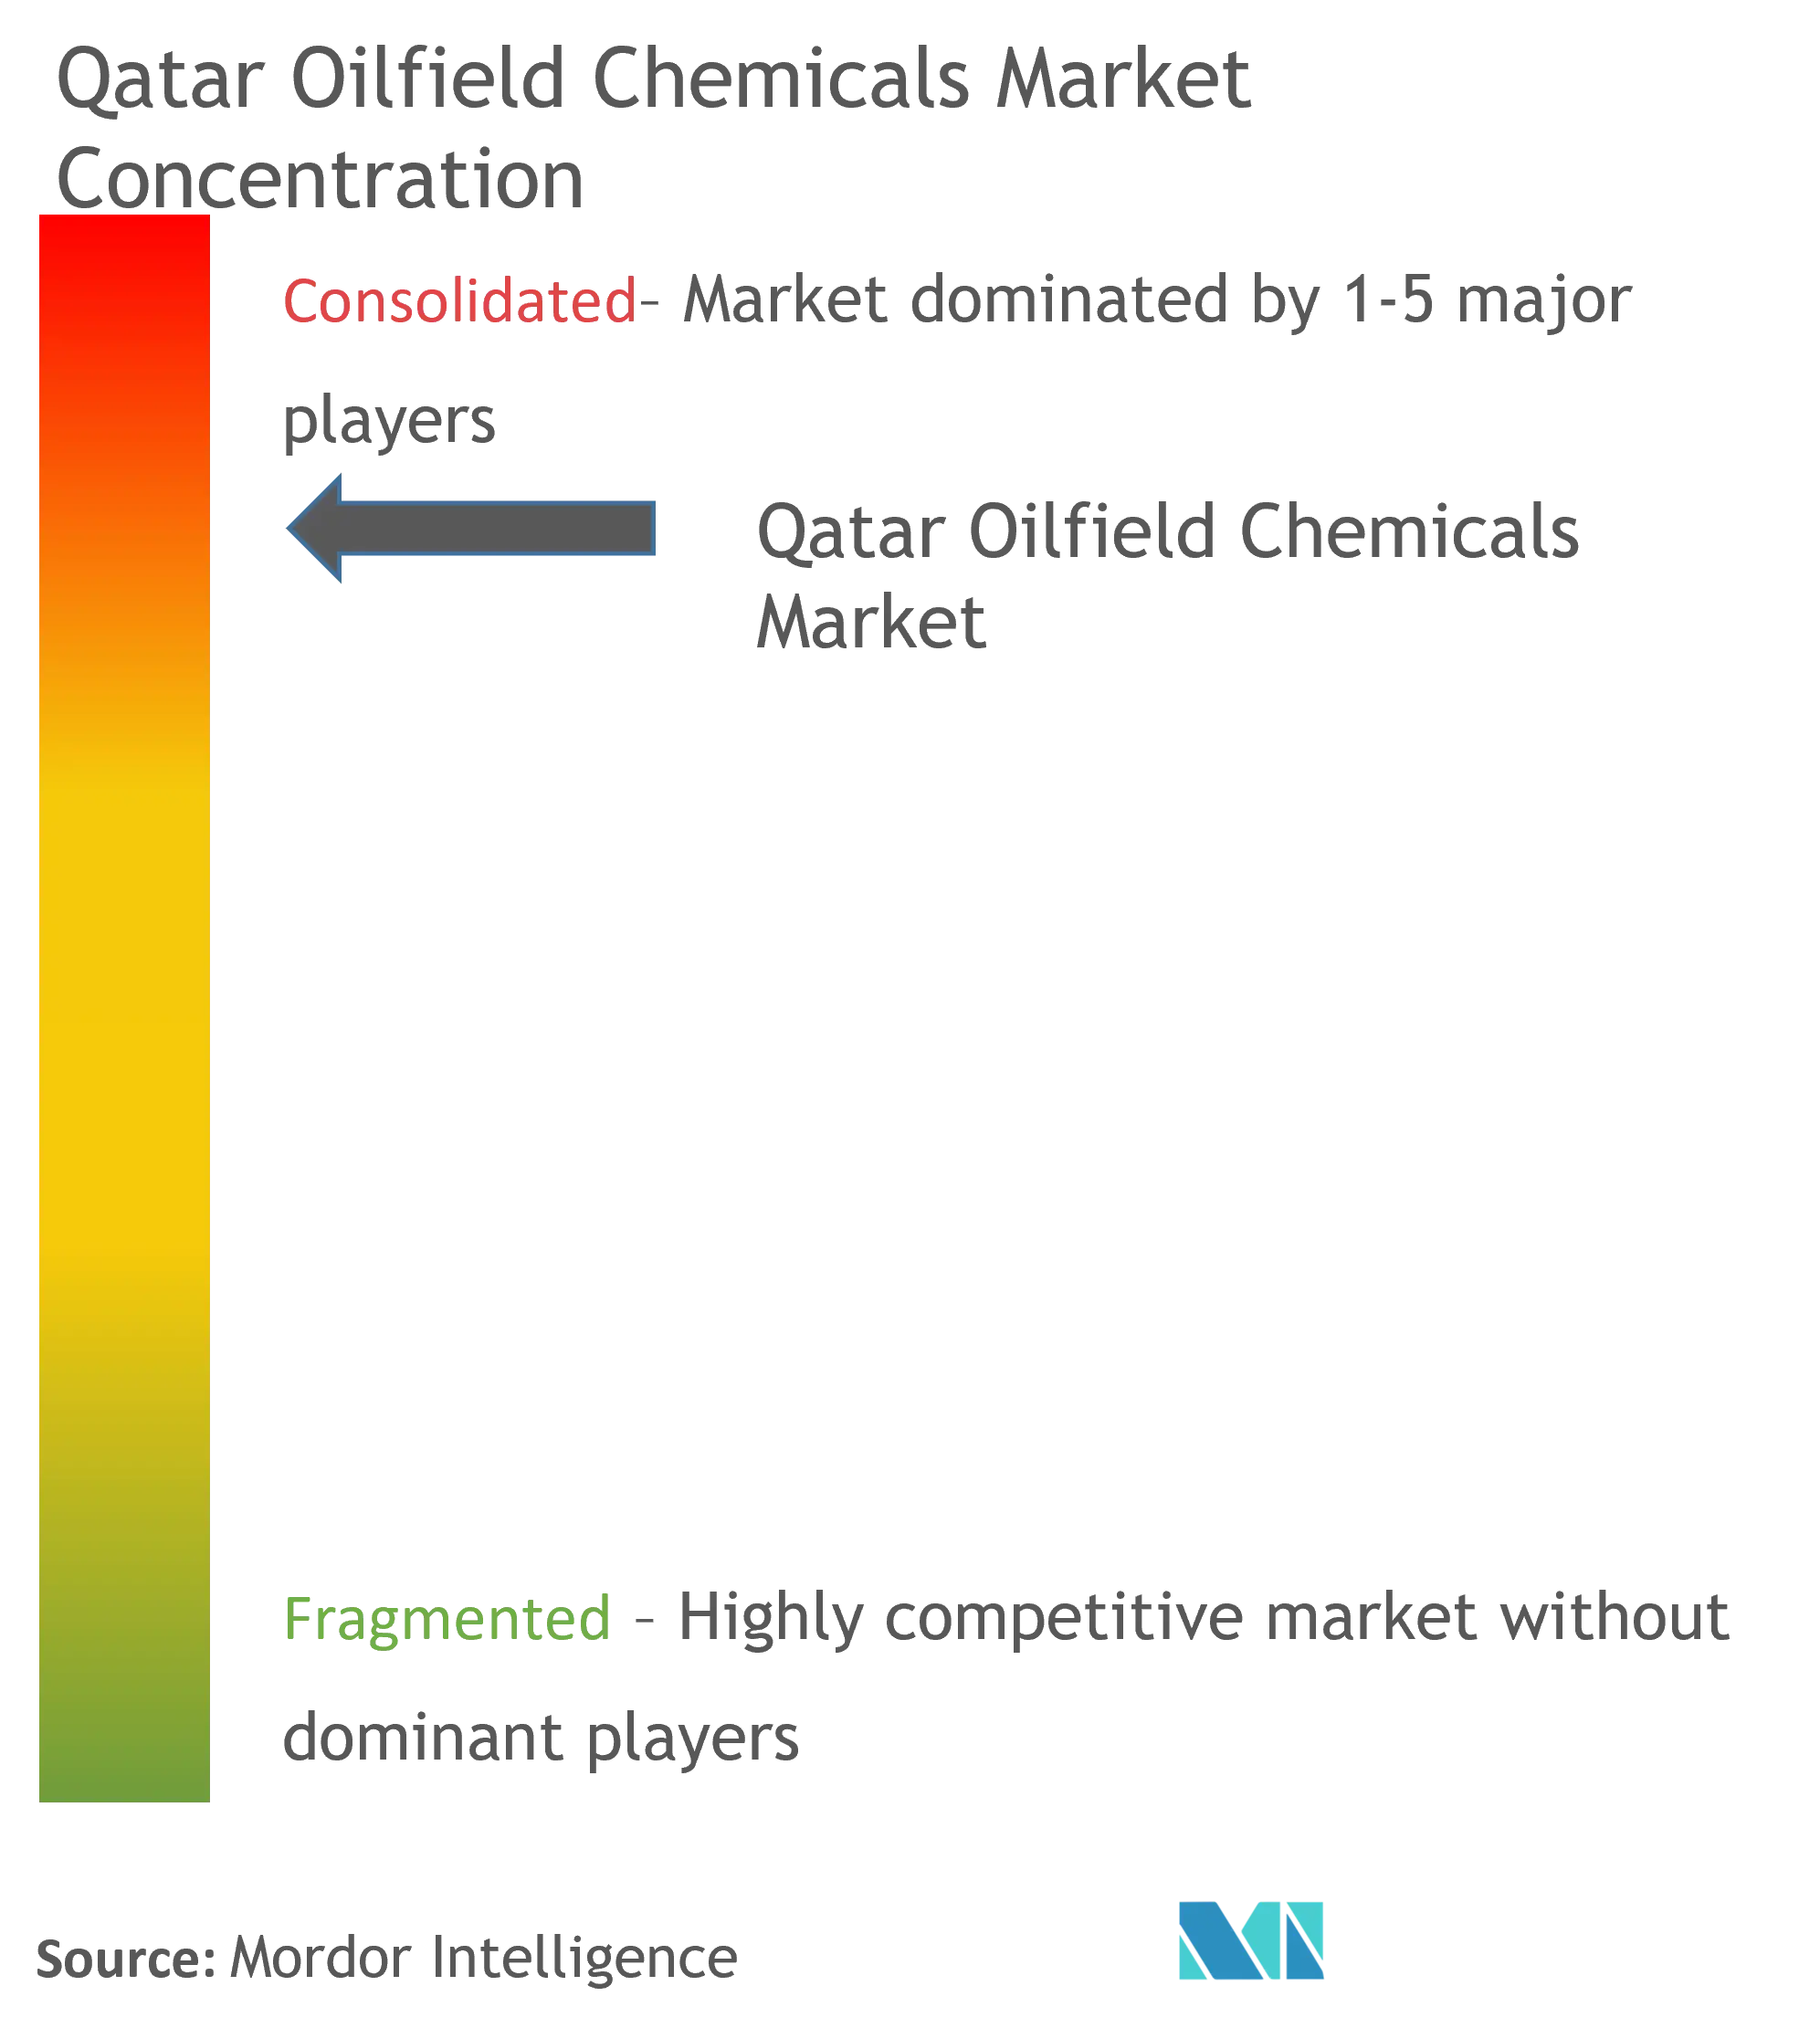 Concentração de mercado - Qatar Oilfield Chemicals Market.png